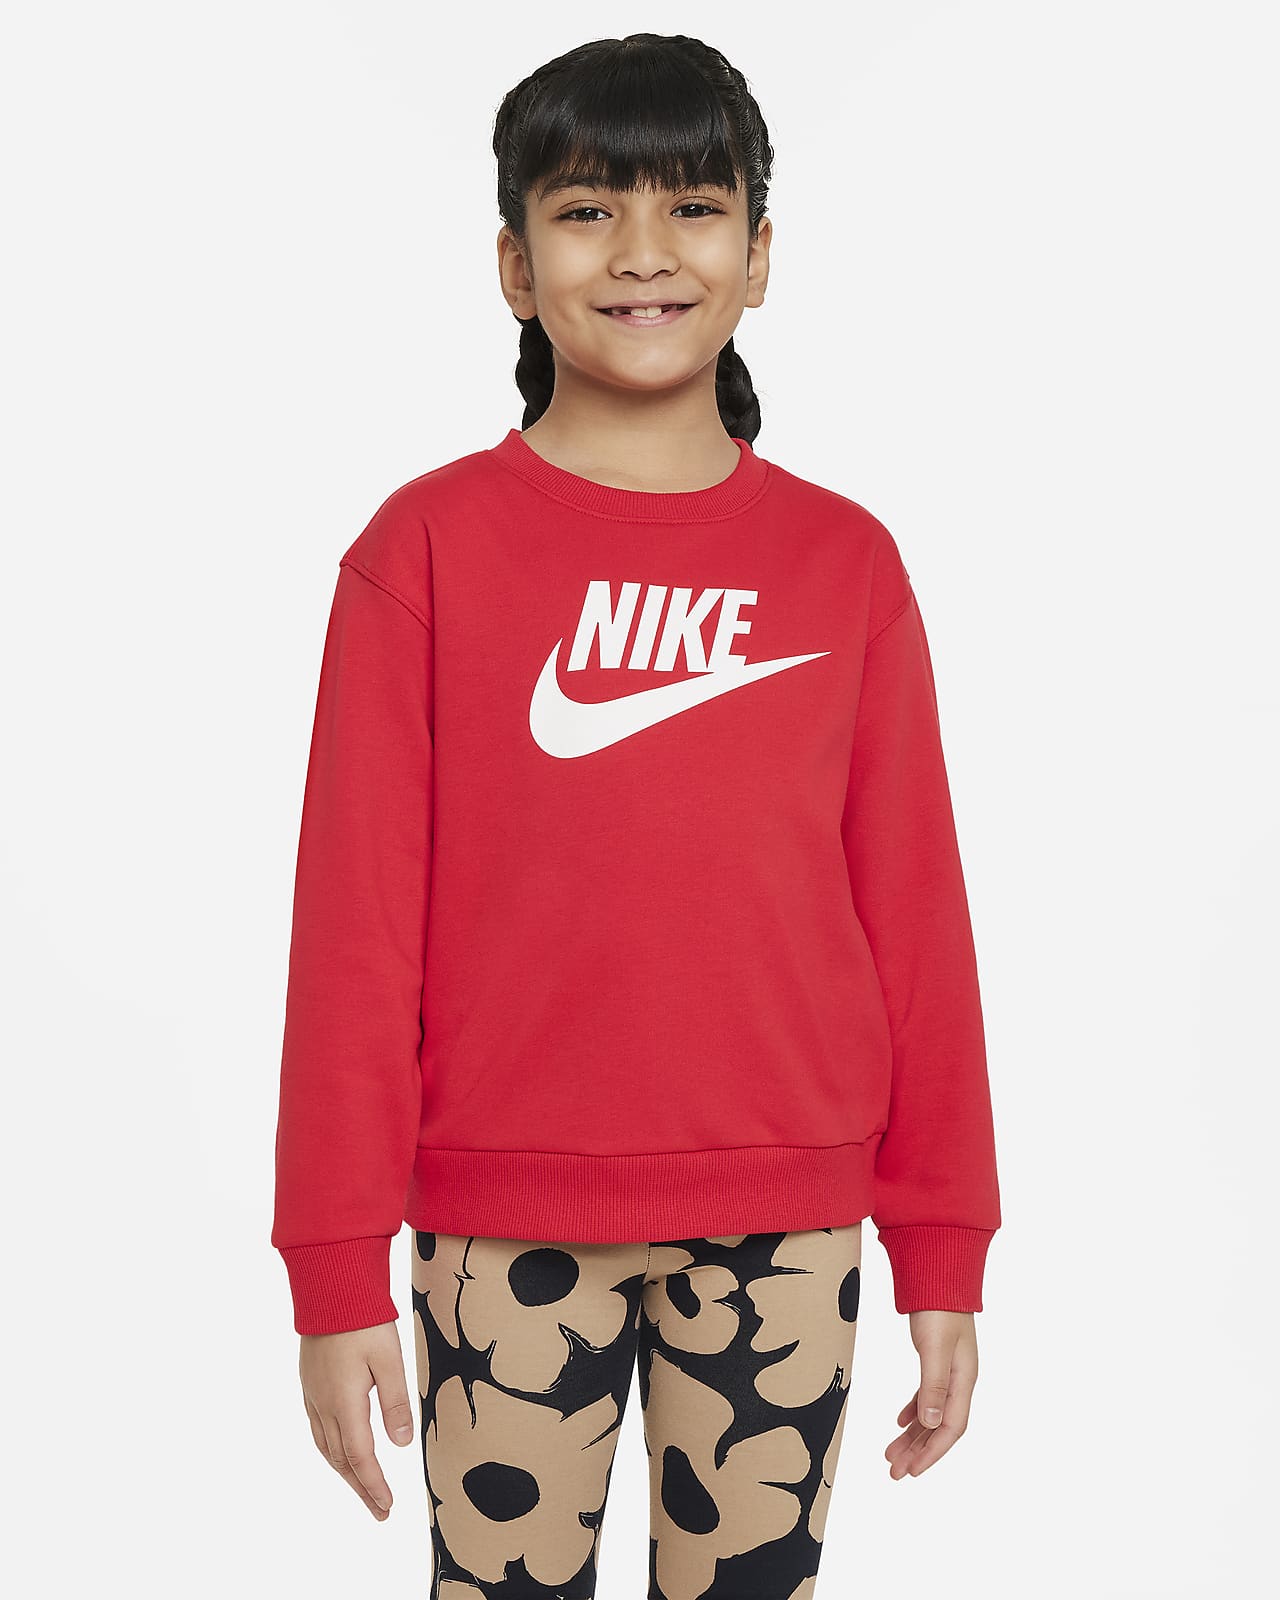 Nike 幼童法式毛圈圆领上衣